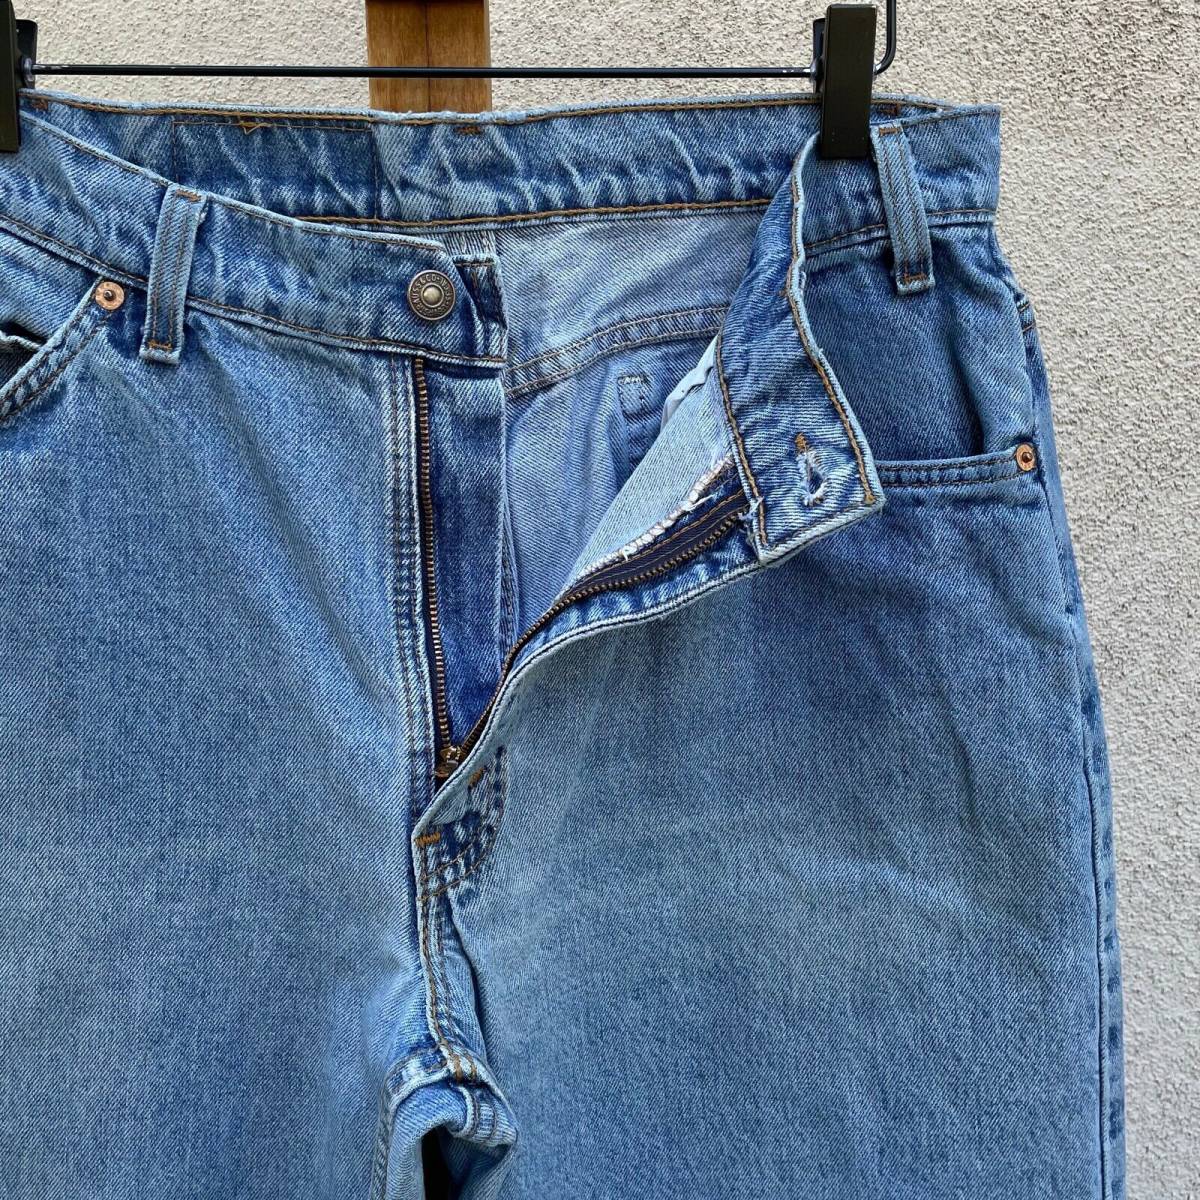 柔らかな質感の USA IN MADE Jeans Tab Orange Tapered Loose 560 Levi's 1990s Vintage  Fits 即決 海外 33 x 31 - 海外商品購入代行